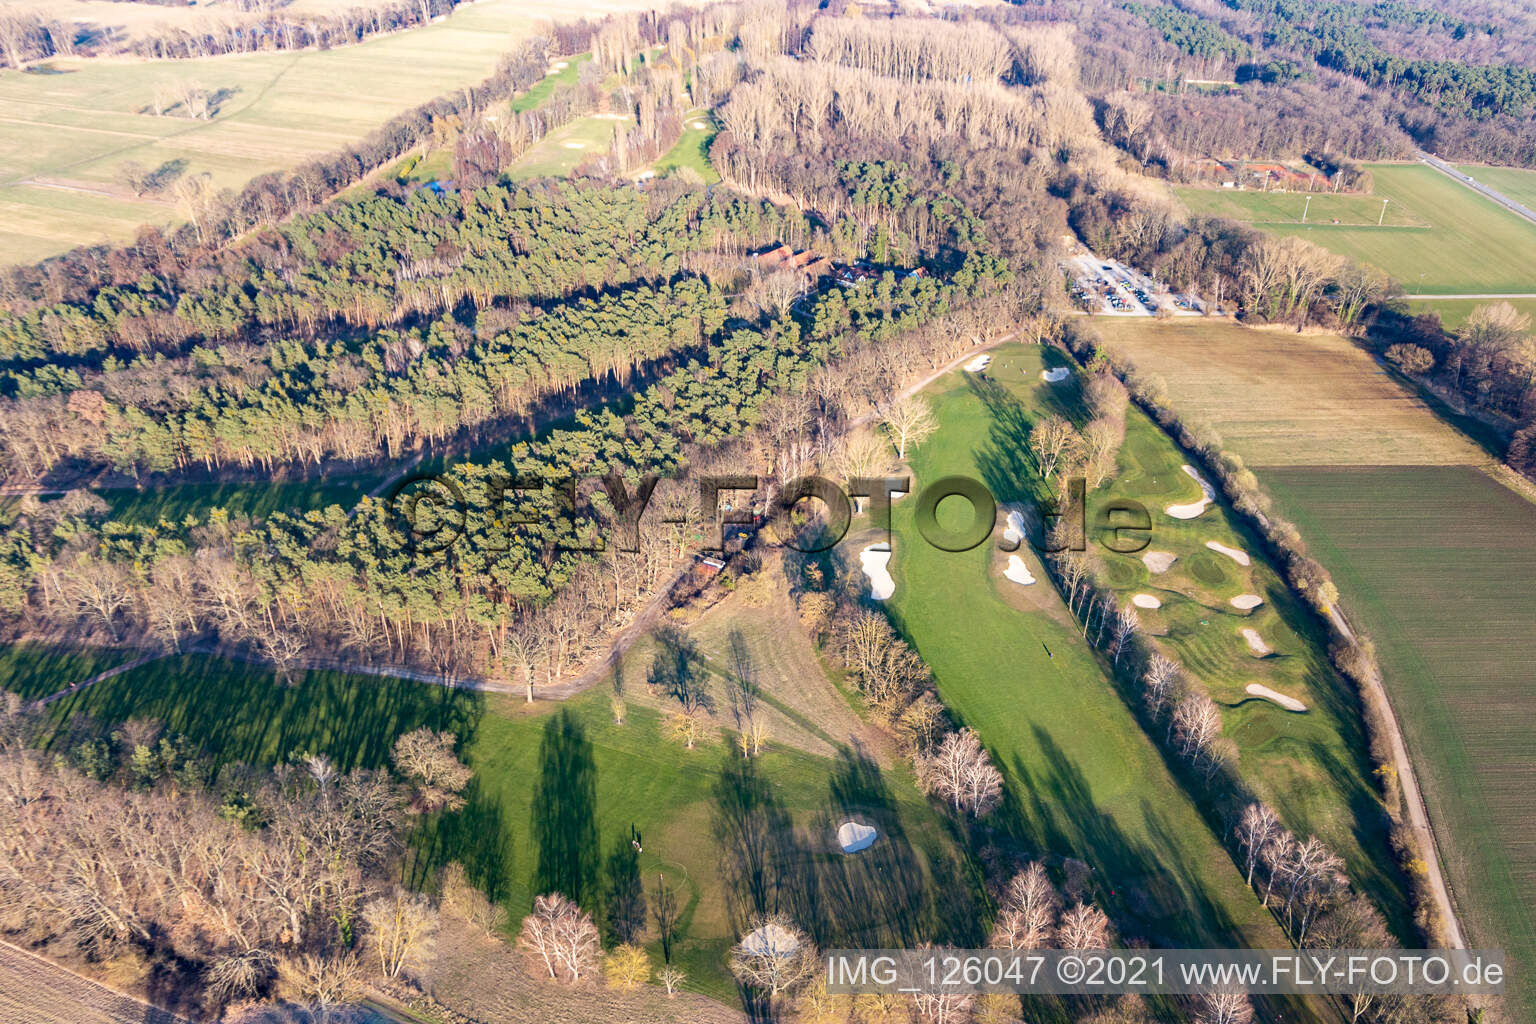 Luftbild von Gelände des Golfplatz Golf-Club Pfalz in Neustadt an der Weinstraße im Ortsteil Geinsheim im Bundesland Rheinland-Pfalz, Deutschland